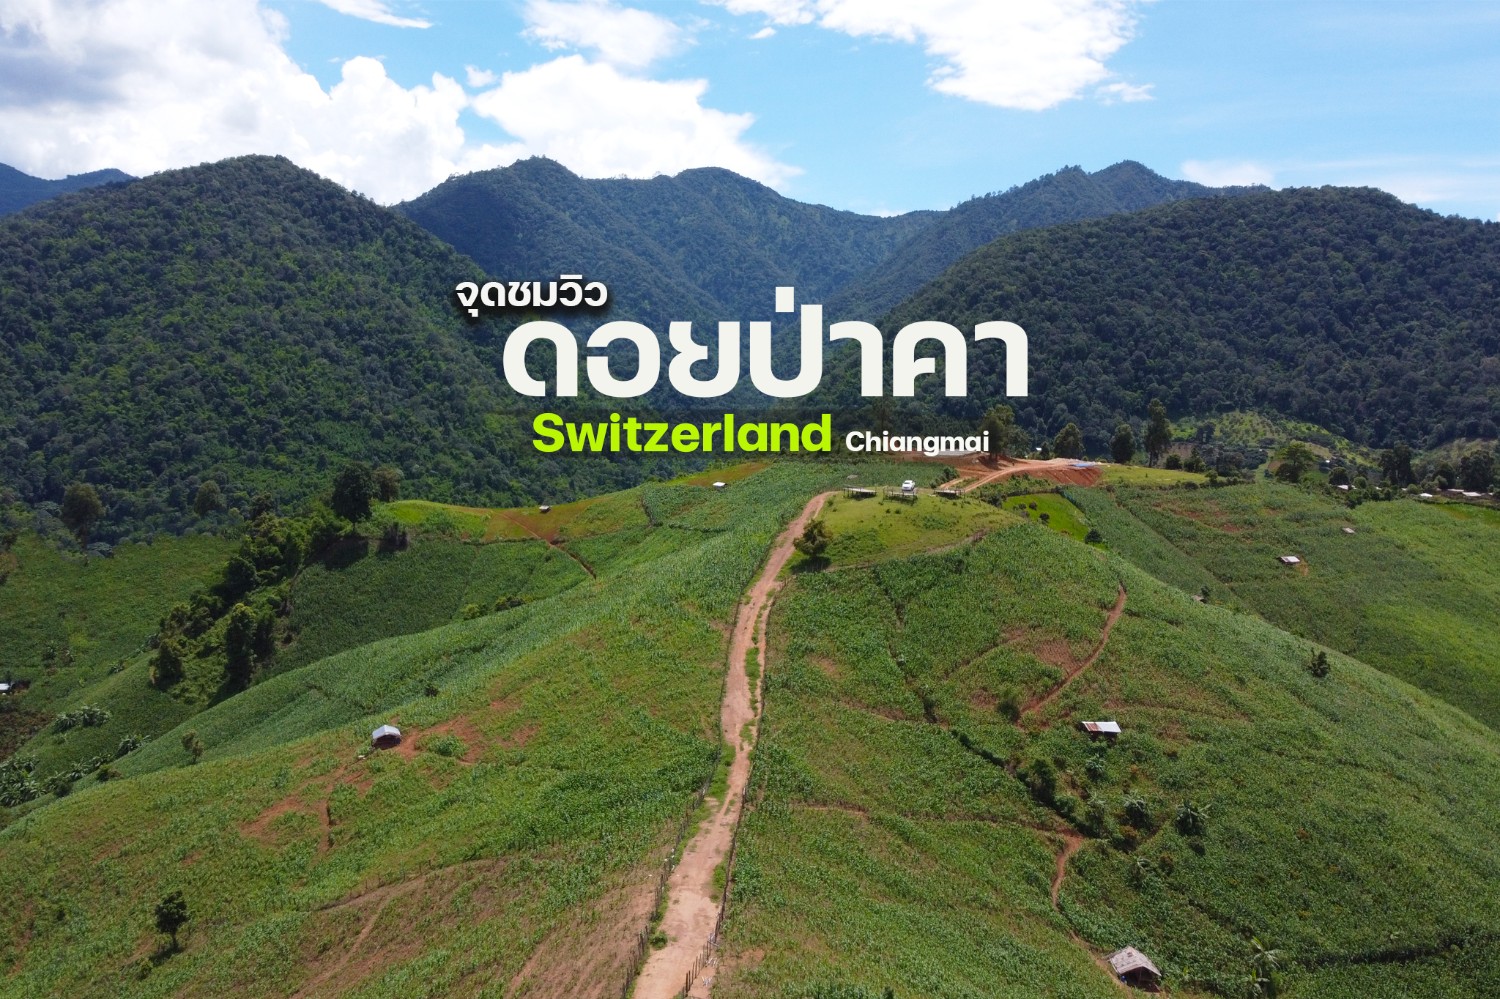 จุดชมวิวดอยป่าคา Switzerland in Chiangmai - Pantip